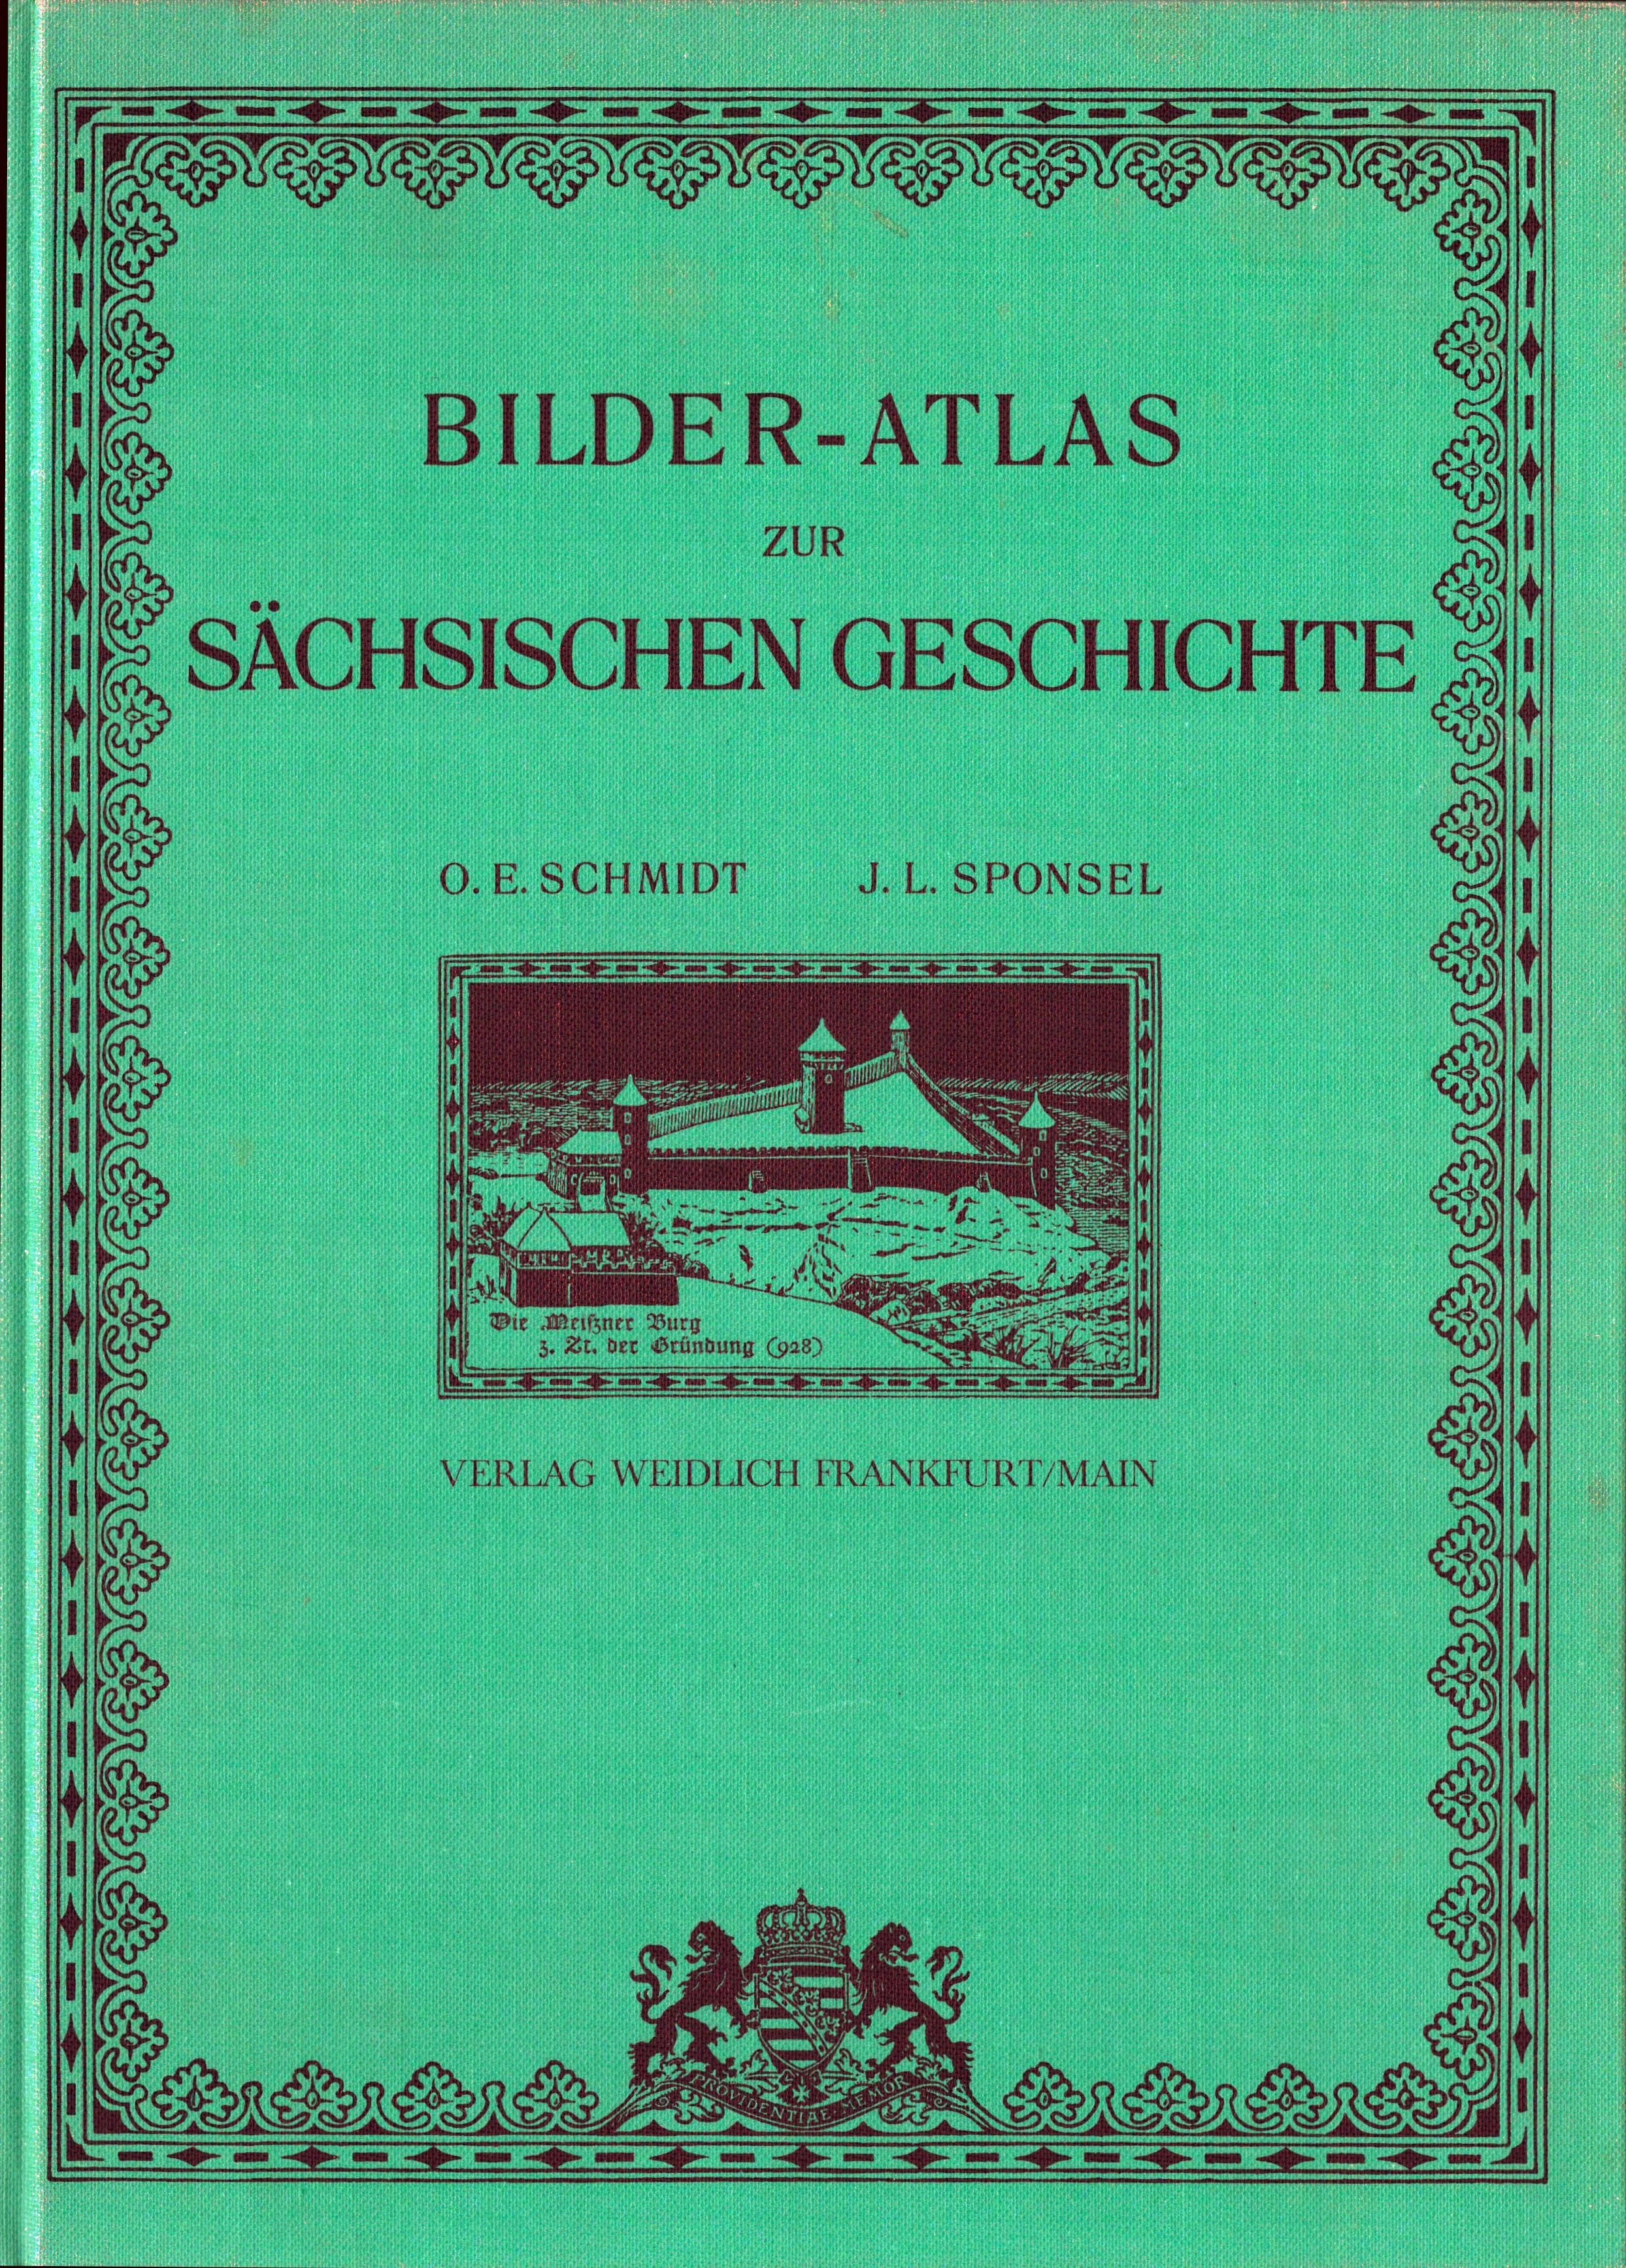 Bilder-Atlas zur Sächsischen Geschichte. (Archiv SAXONIA-FREIBERG-STIFTUNG CC BY-NC-SA)